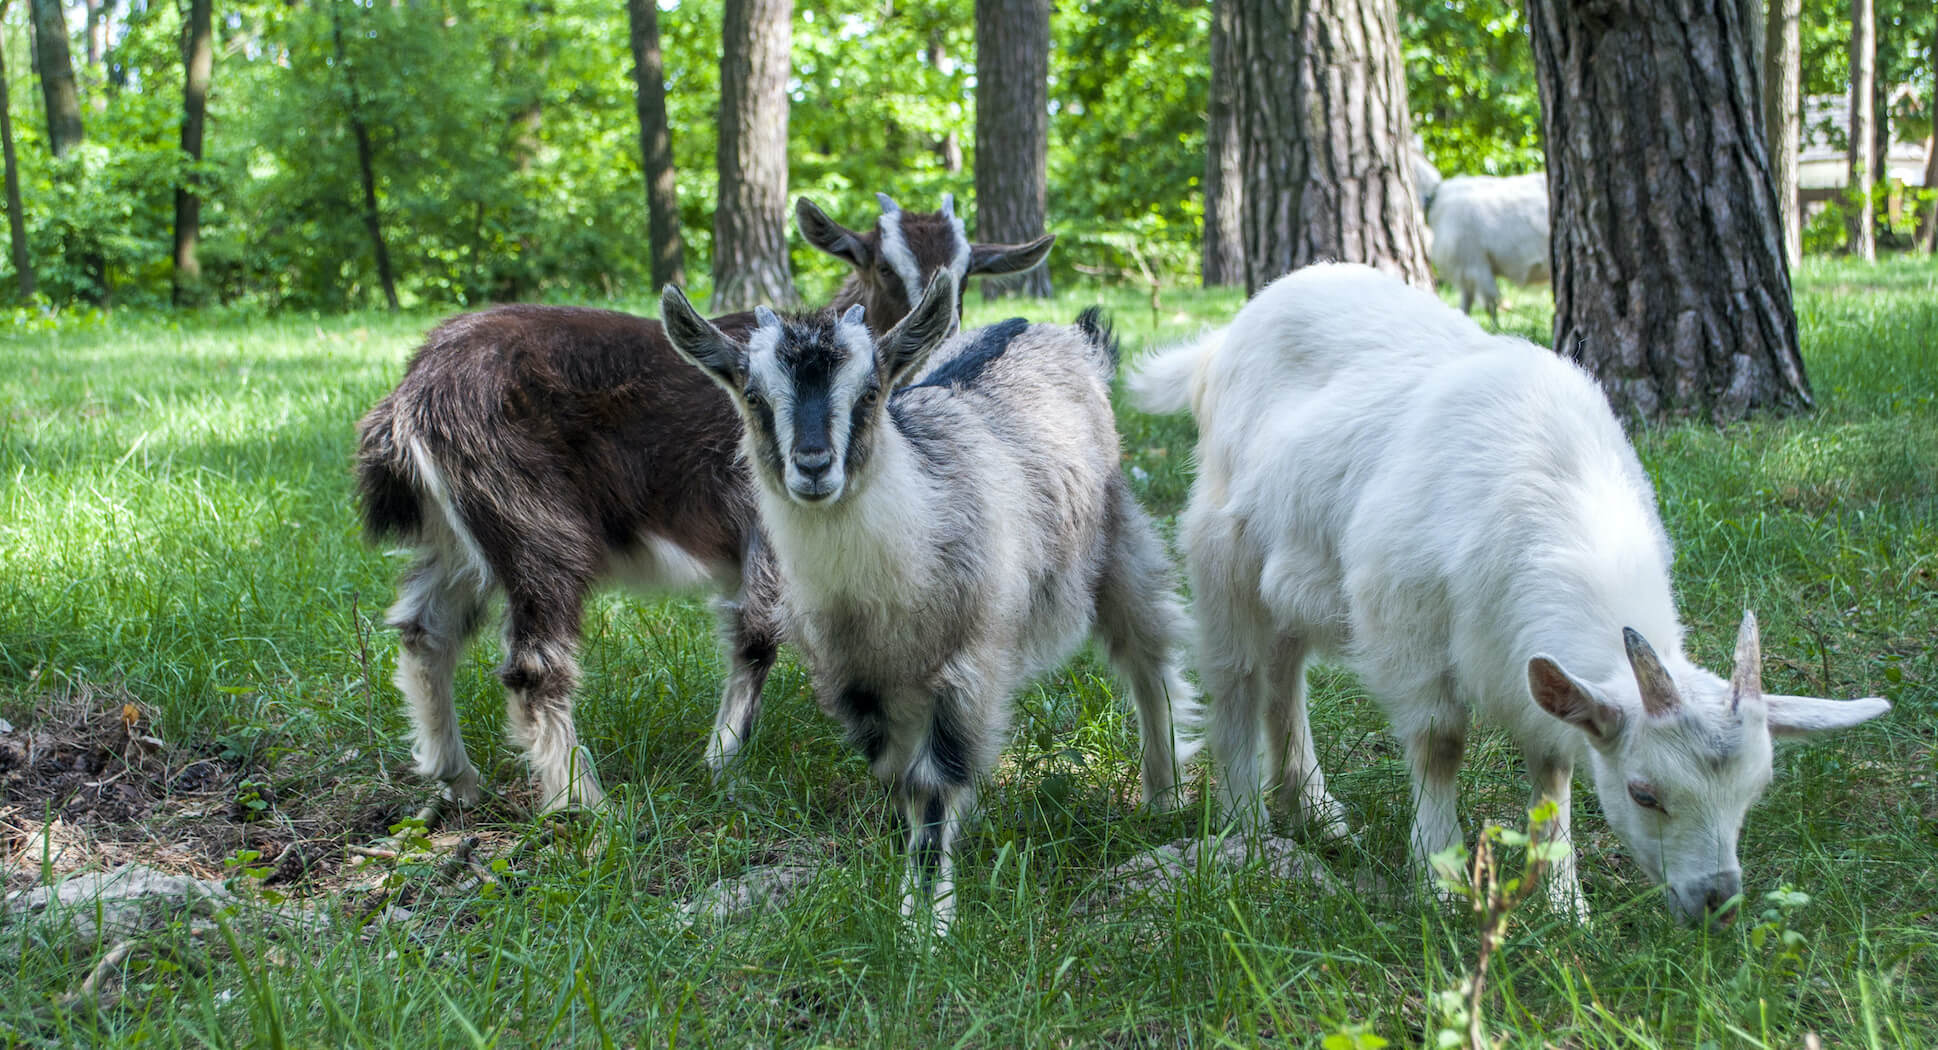 goats.jpg